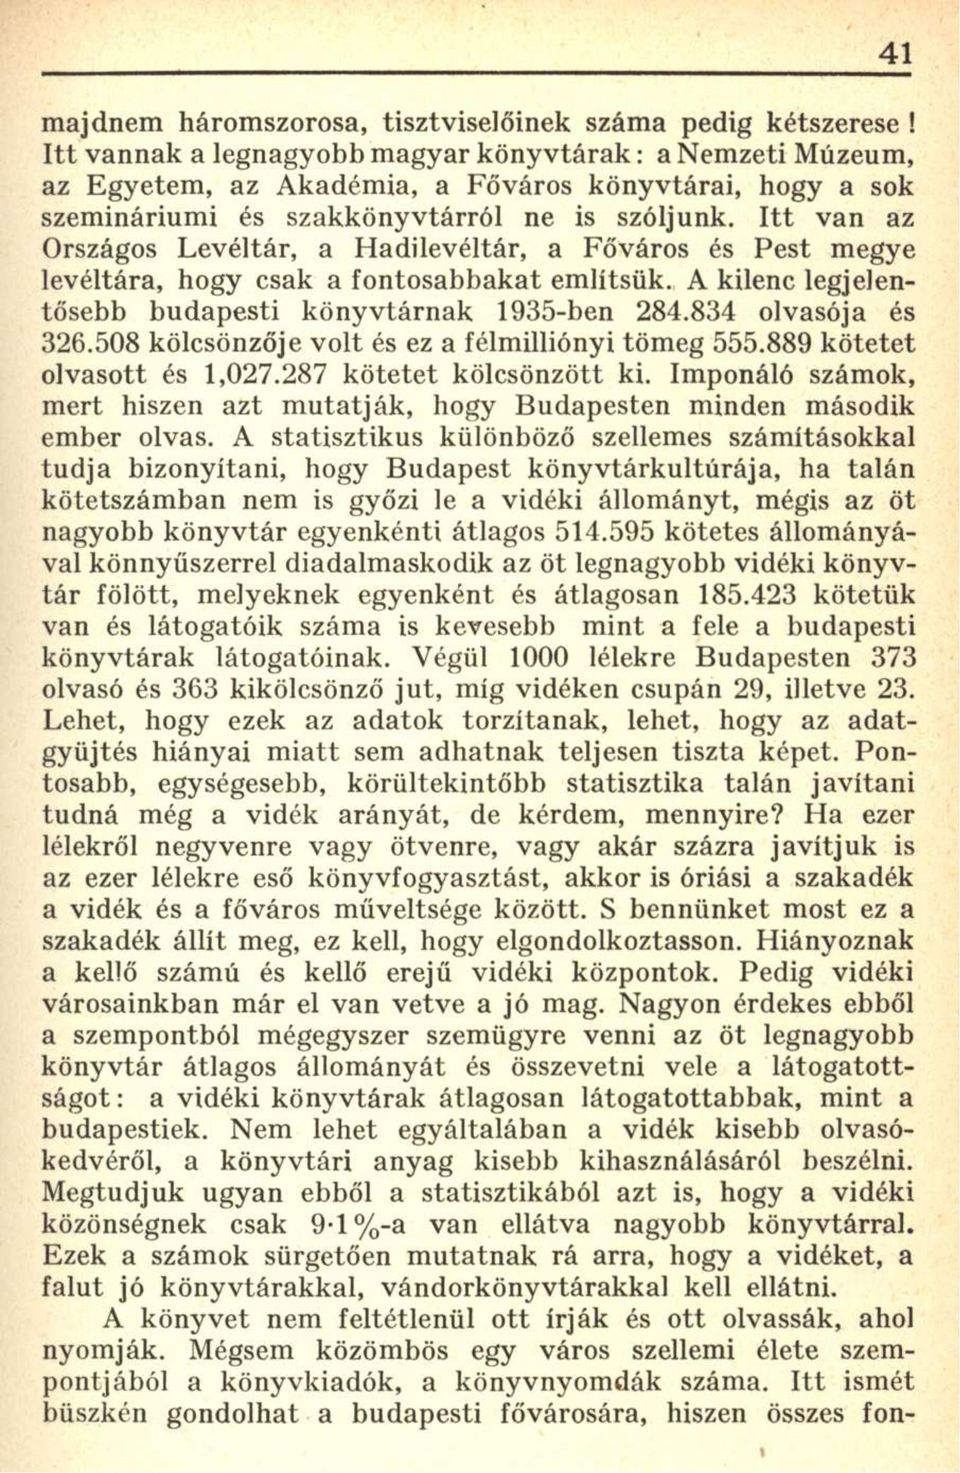 Itt van az Országos Levéltár, a Hadilevéltár, a Főváros és Pest megye levéltára, hogy csak a fontosabbakat említsük. A kilenc legjelentősebb budapesti könyvtárnak 1935-ben 284.834 olvasója és 326.